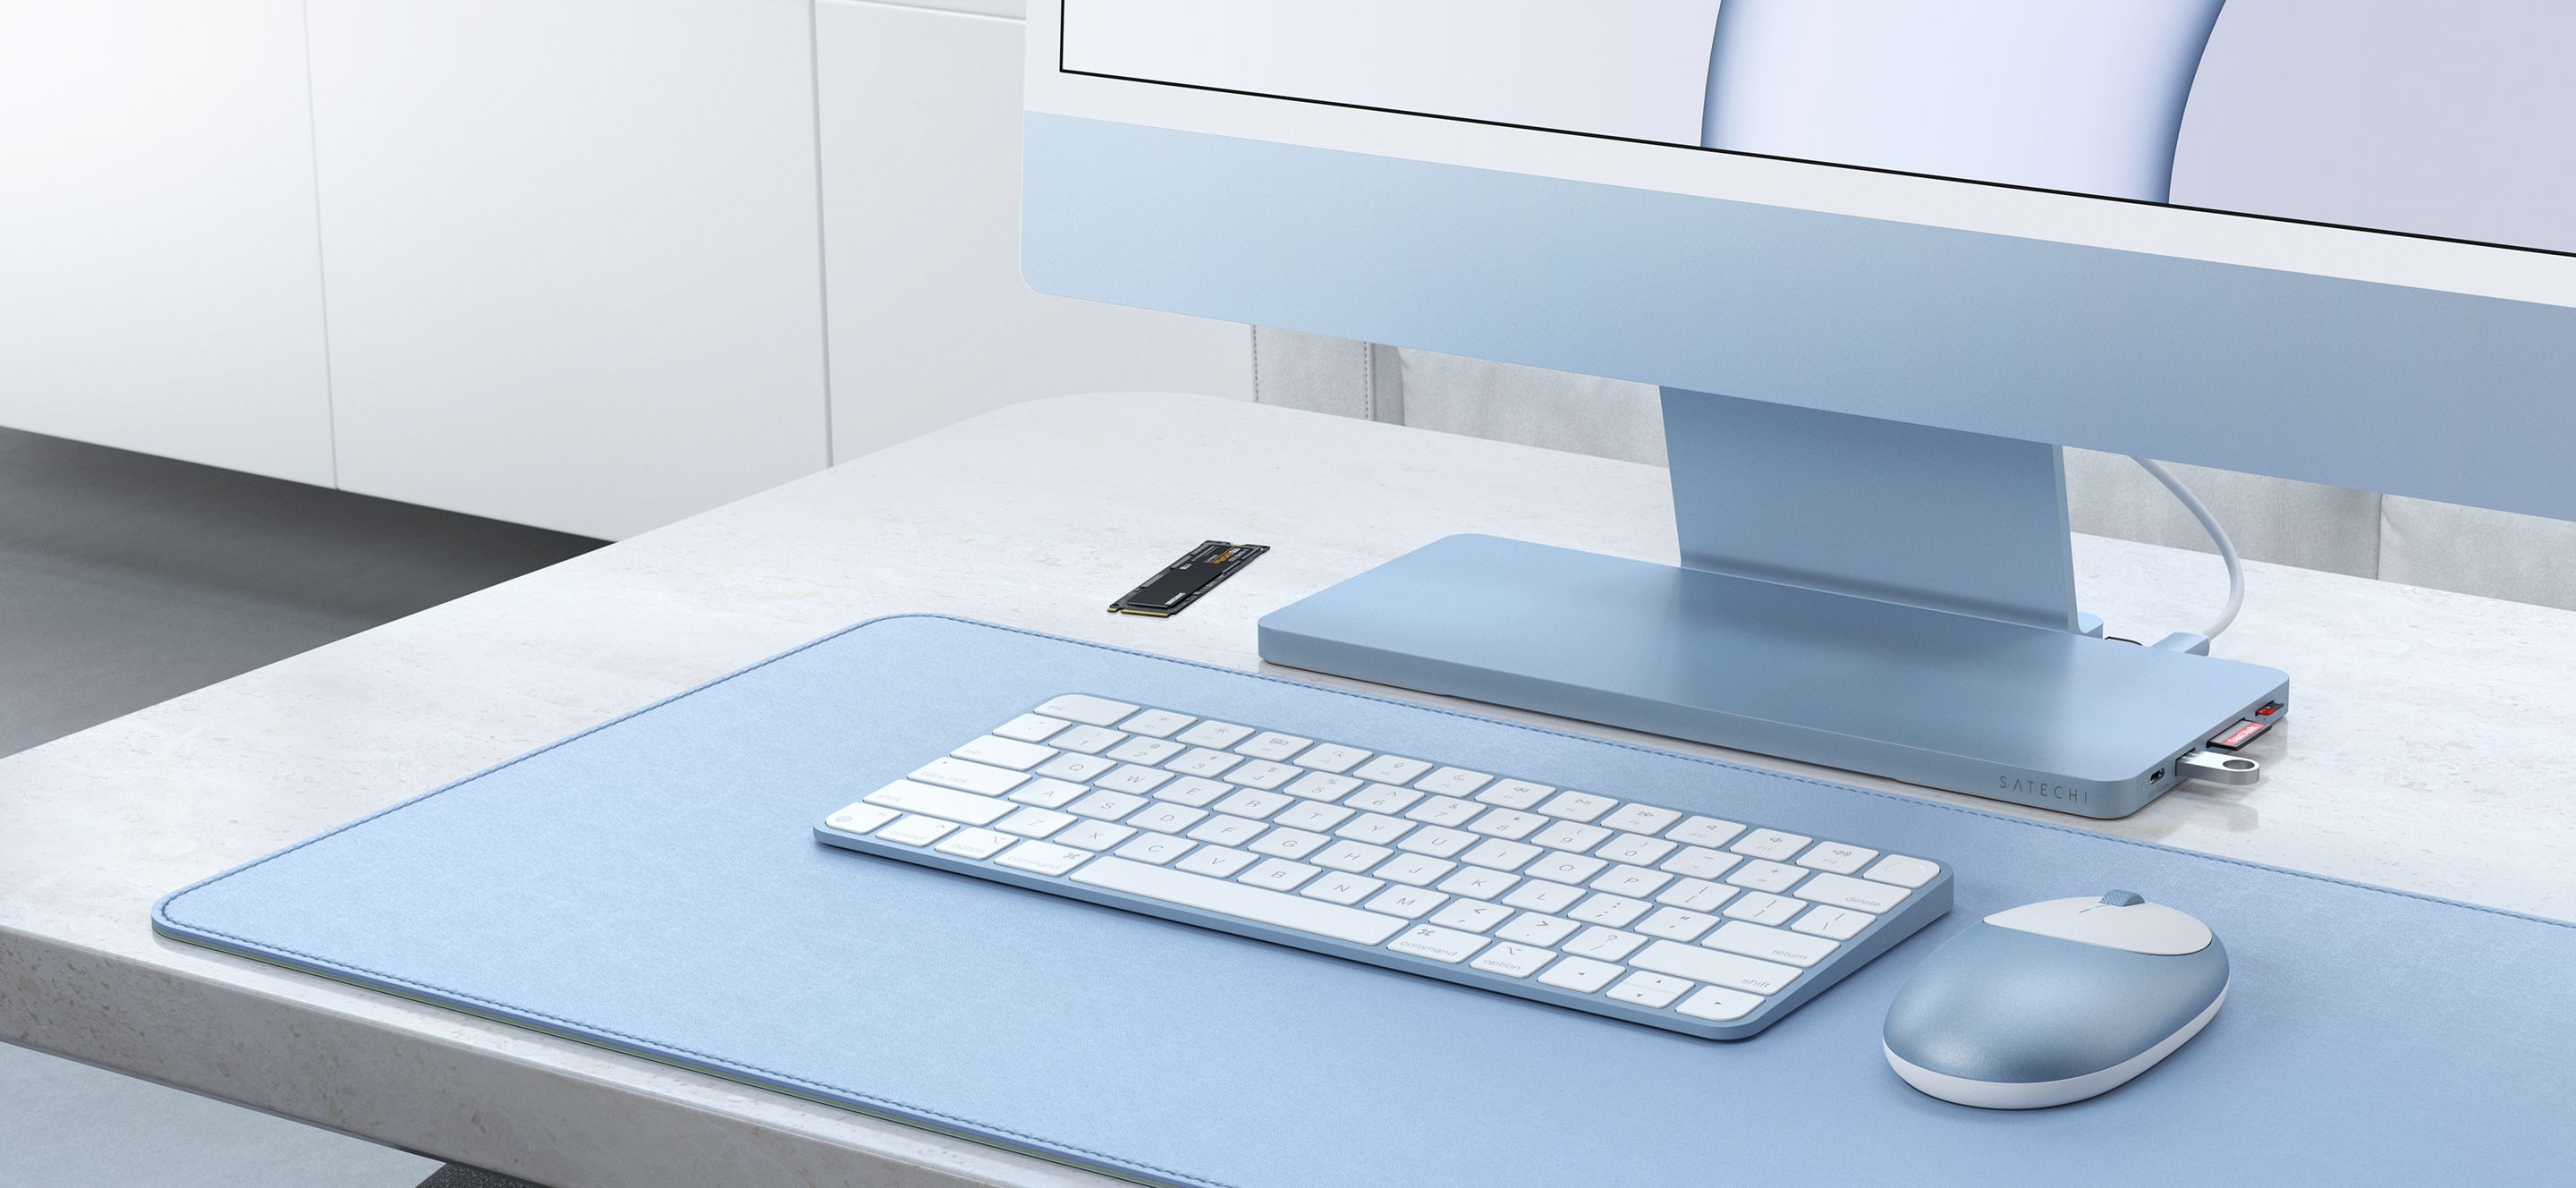 Satechi apresenta novo USB-C Narrow Dock para iMac de 24 polegadas com gabinete para SSD externo